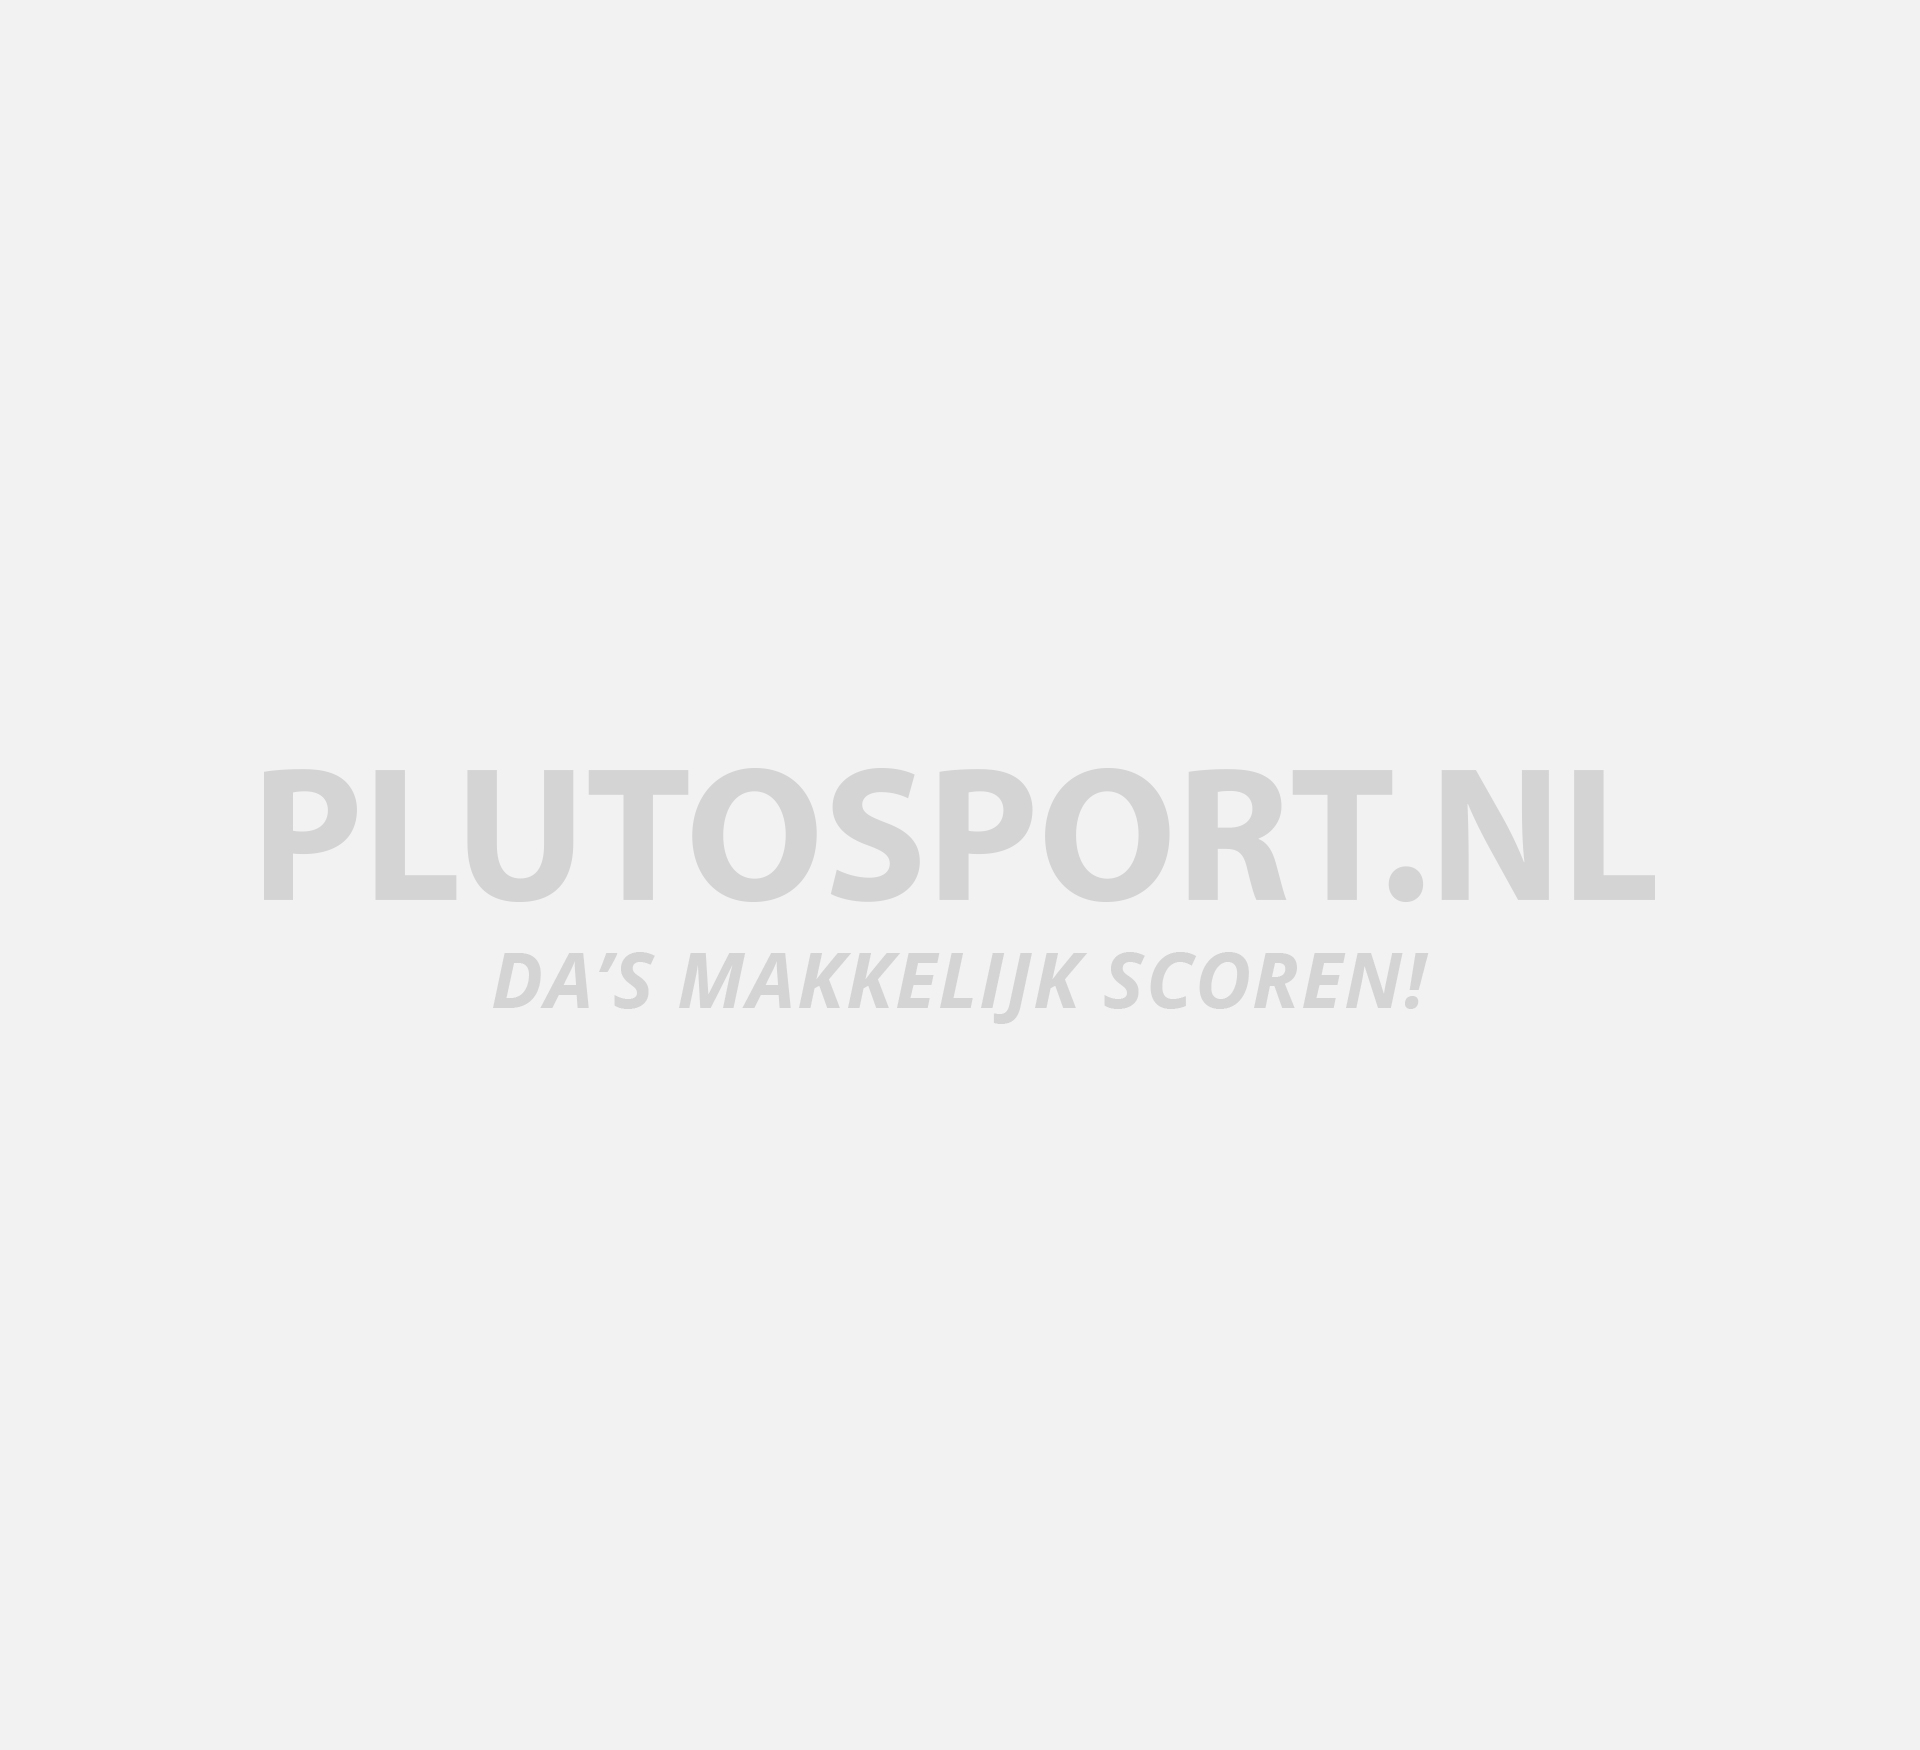 Burton Skisokken (2-pack) | Plutosport